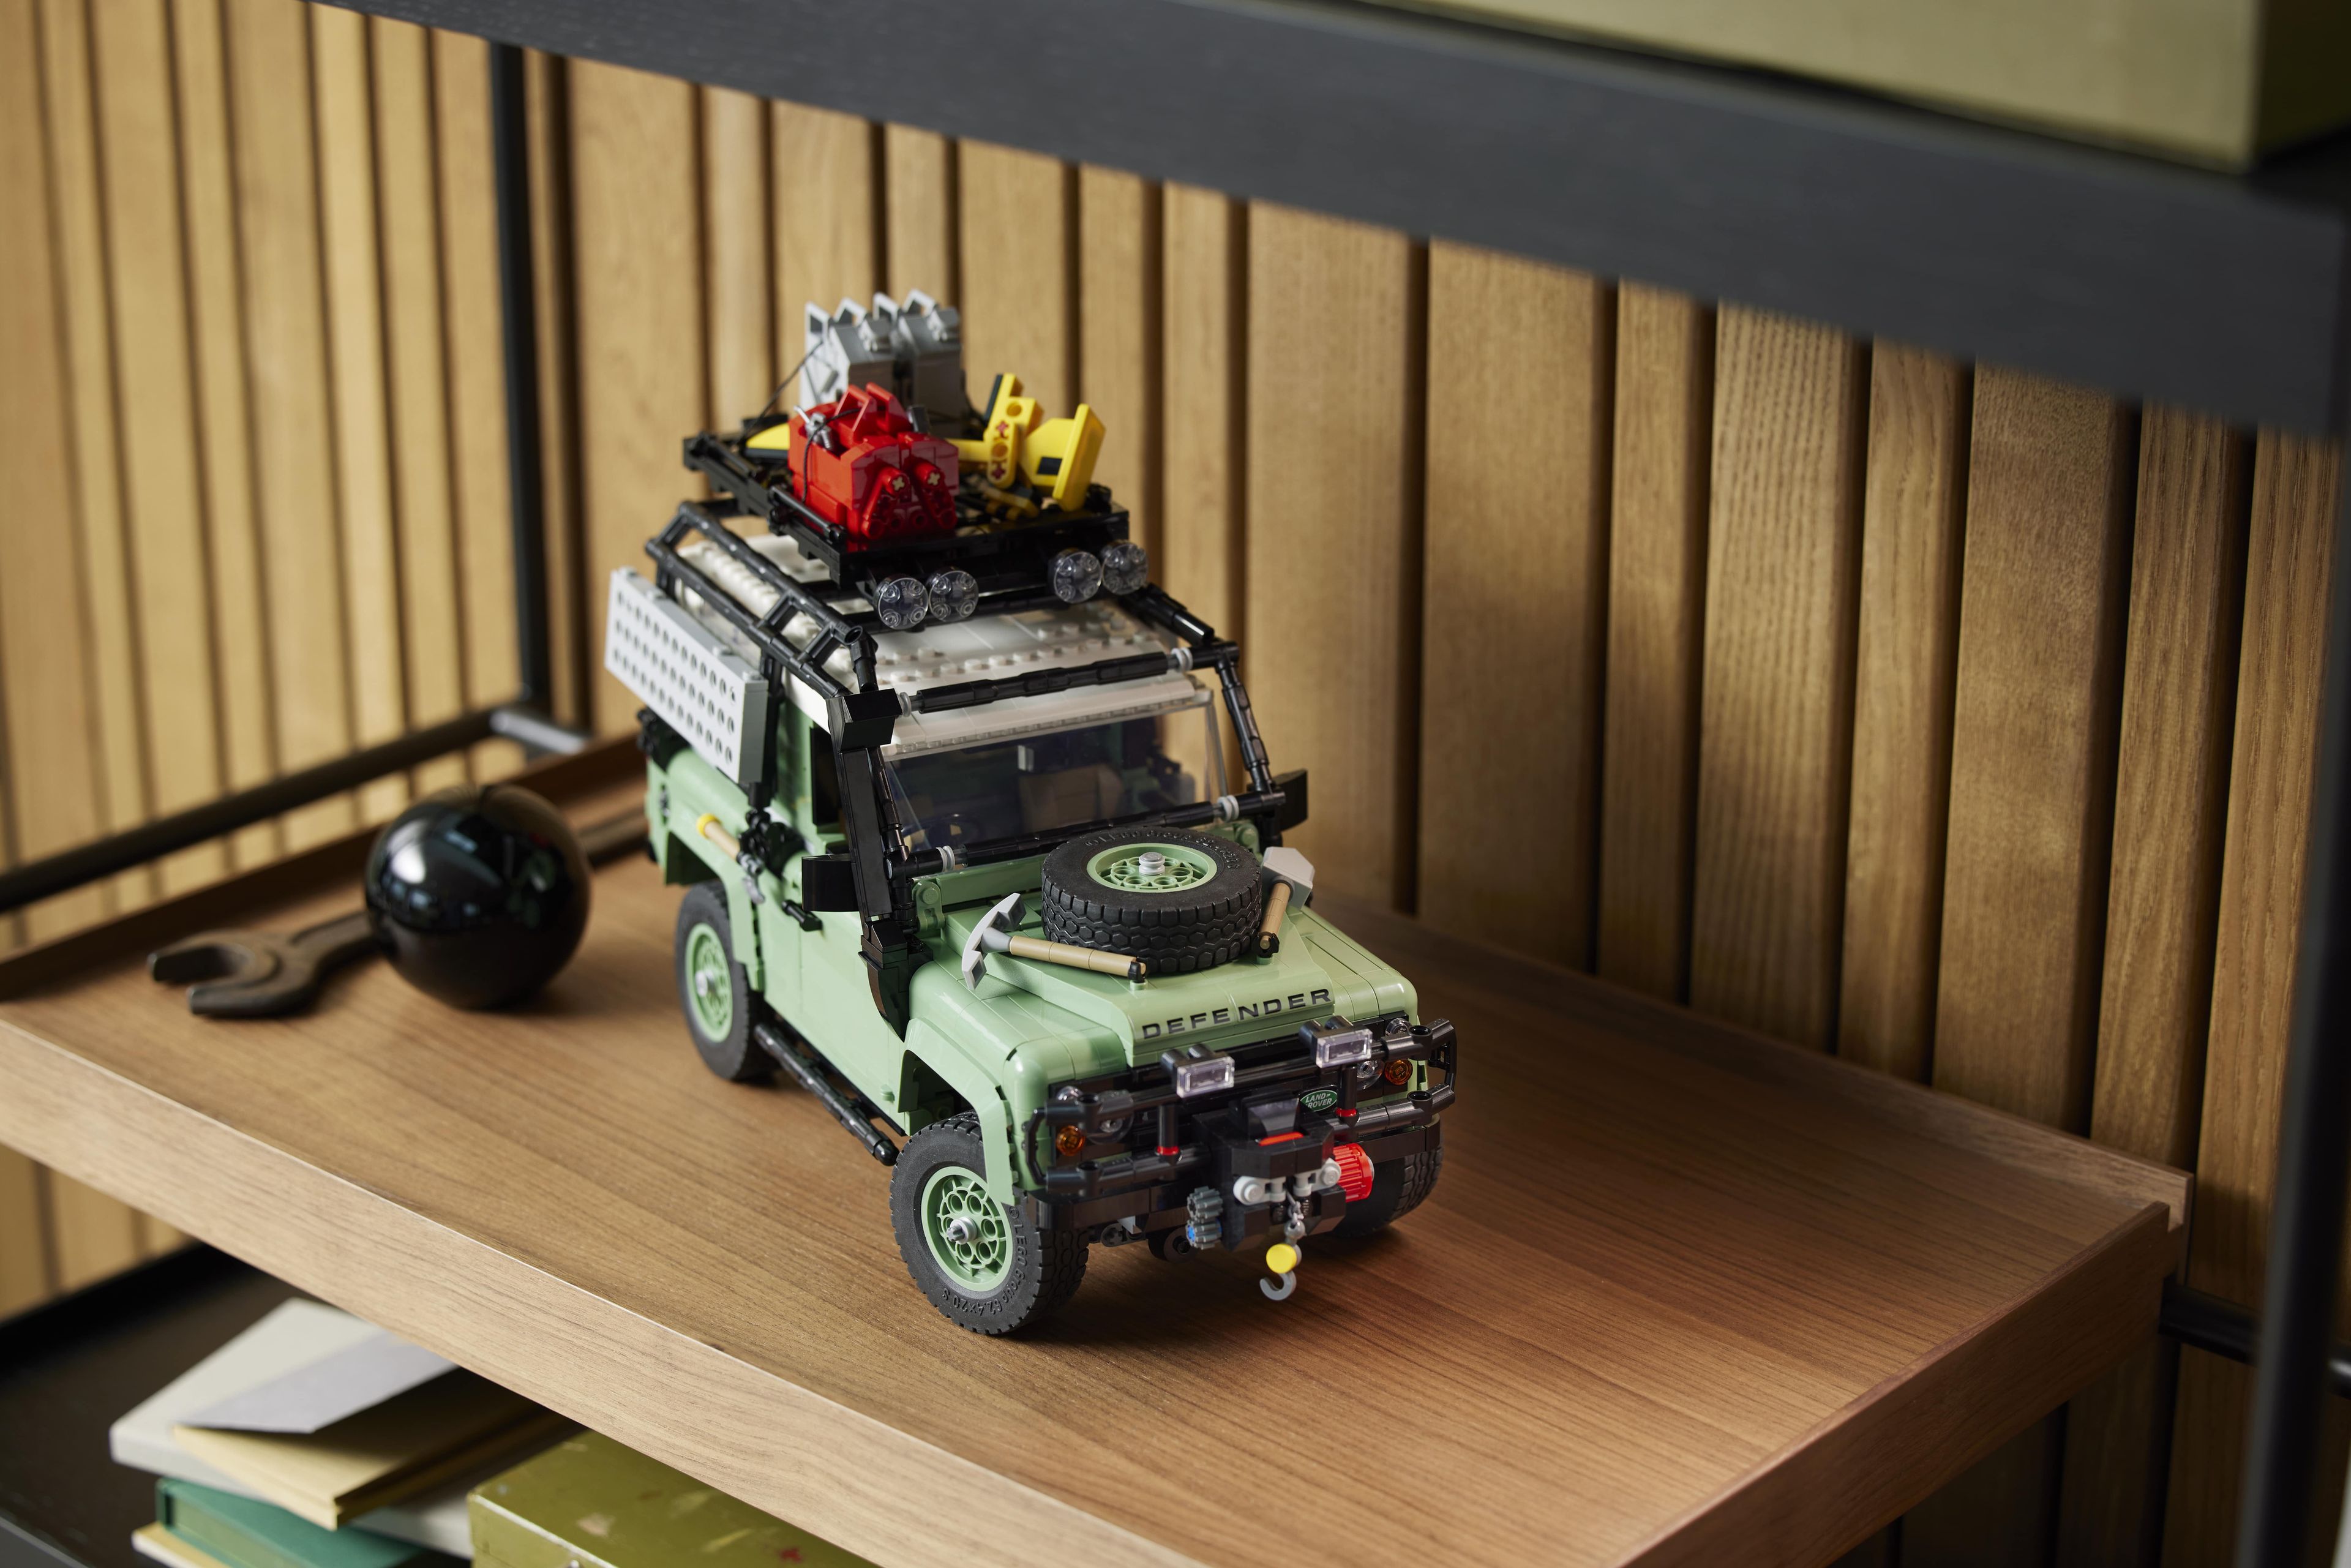 Land Rover Defender LEGO